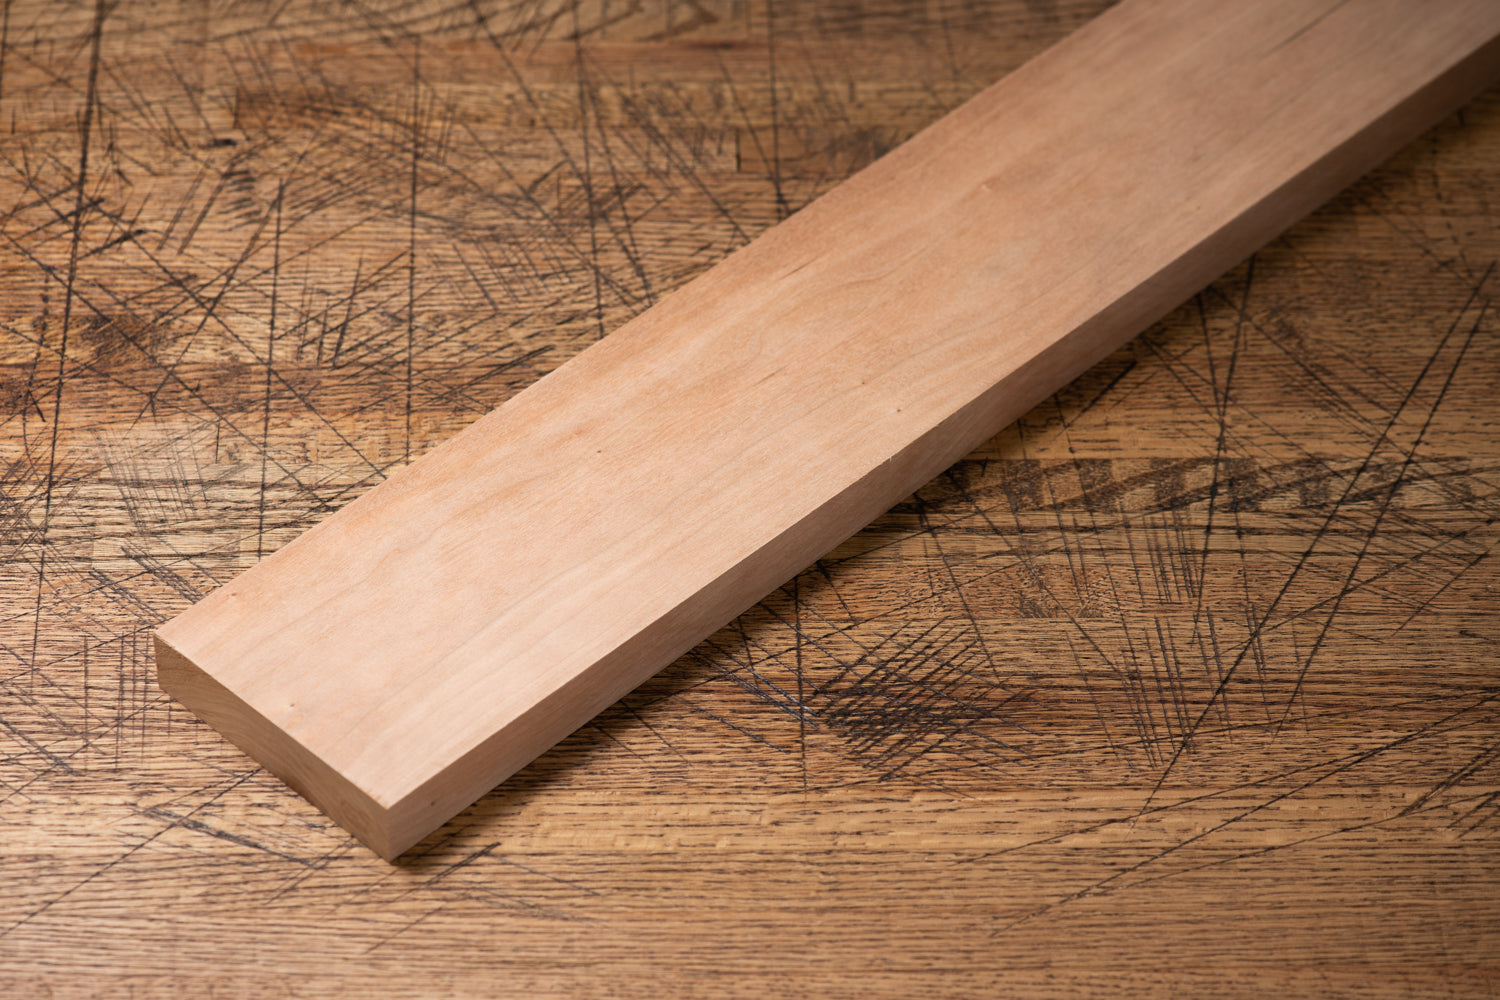 Walnut Wood Sheet Plank Thin 1/32 x 3 x 12 long Veneer Woodworking Kiln  Dried